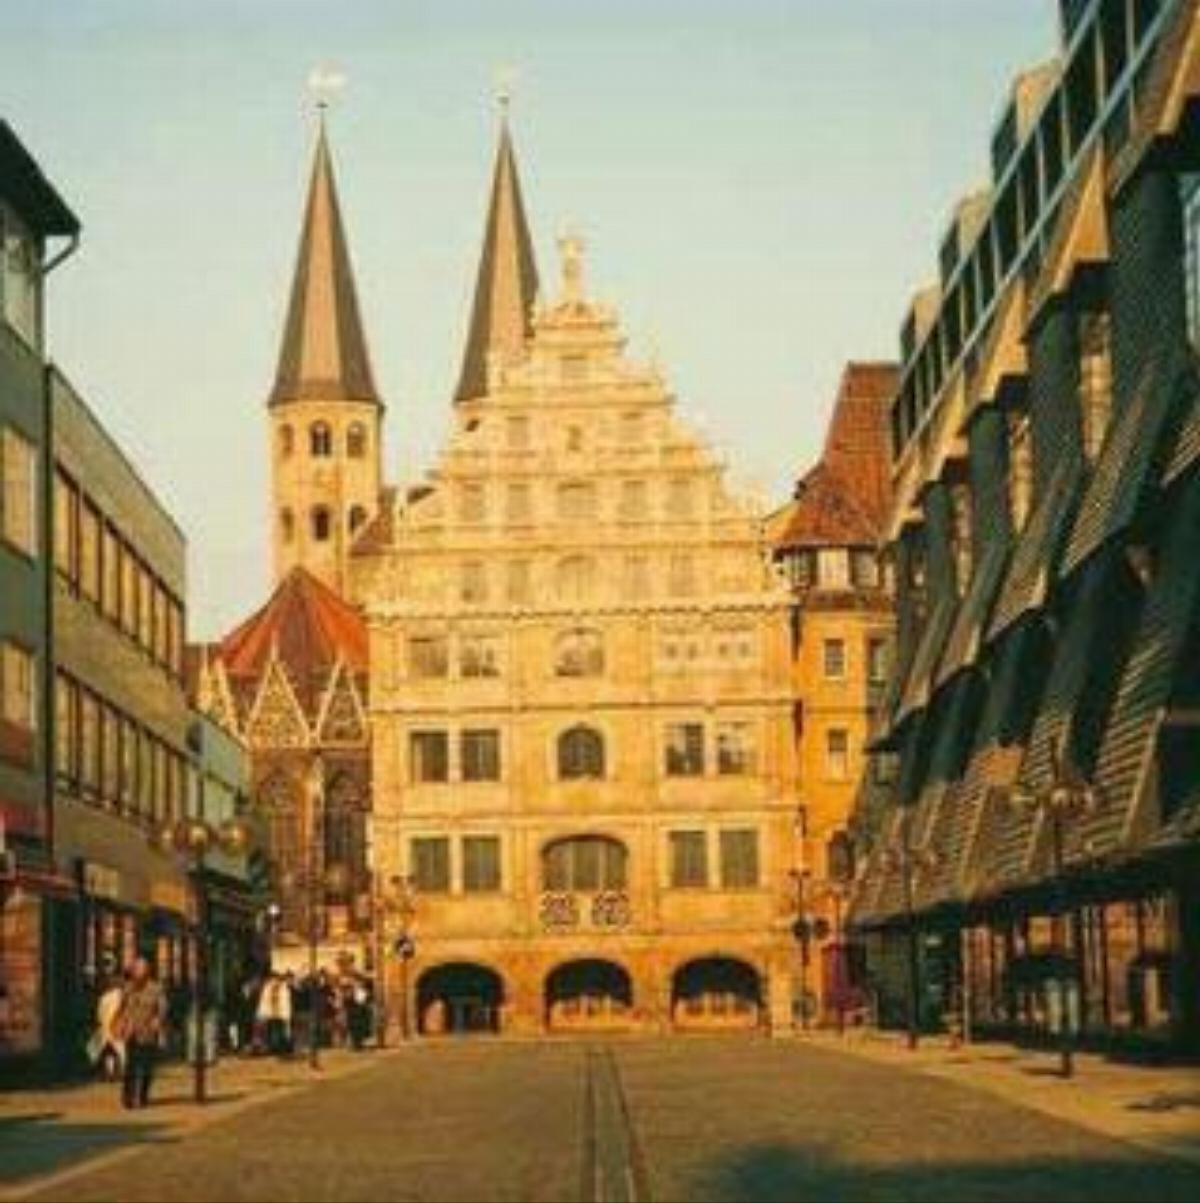 Best Western Plus Hotel StadtPalais Hotel Braunschweig Germany